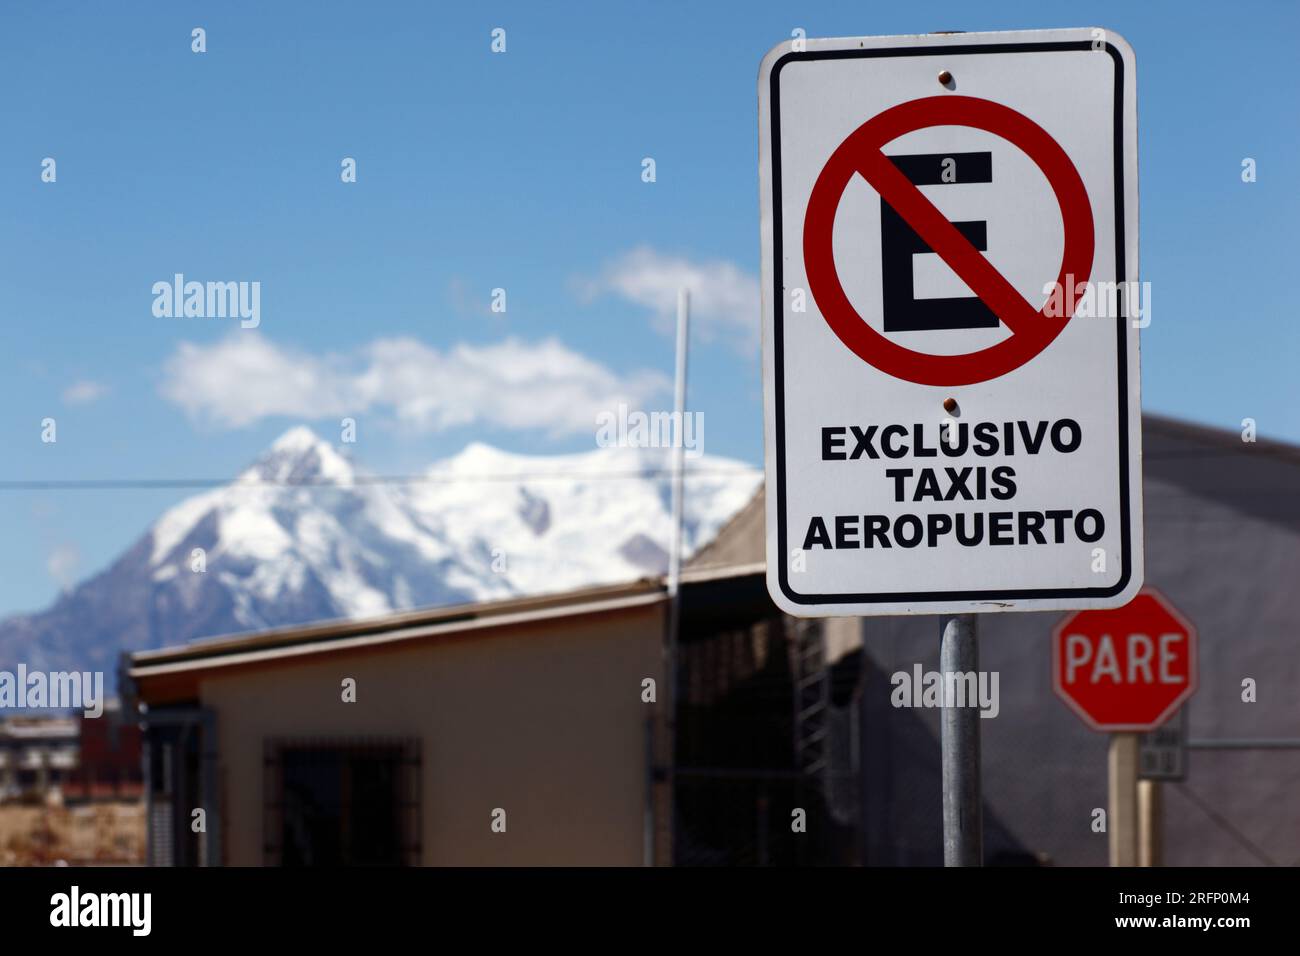 Non c'è parcheggio, c'è solo un cartello taxi ufficiale per l'aeroporto LPB la Paz / El alto, dietro il monte Illimani, indicazioni per El alto, Bolivia Foto Stock